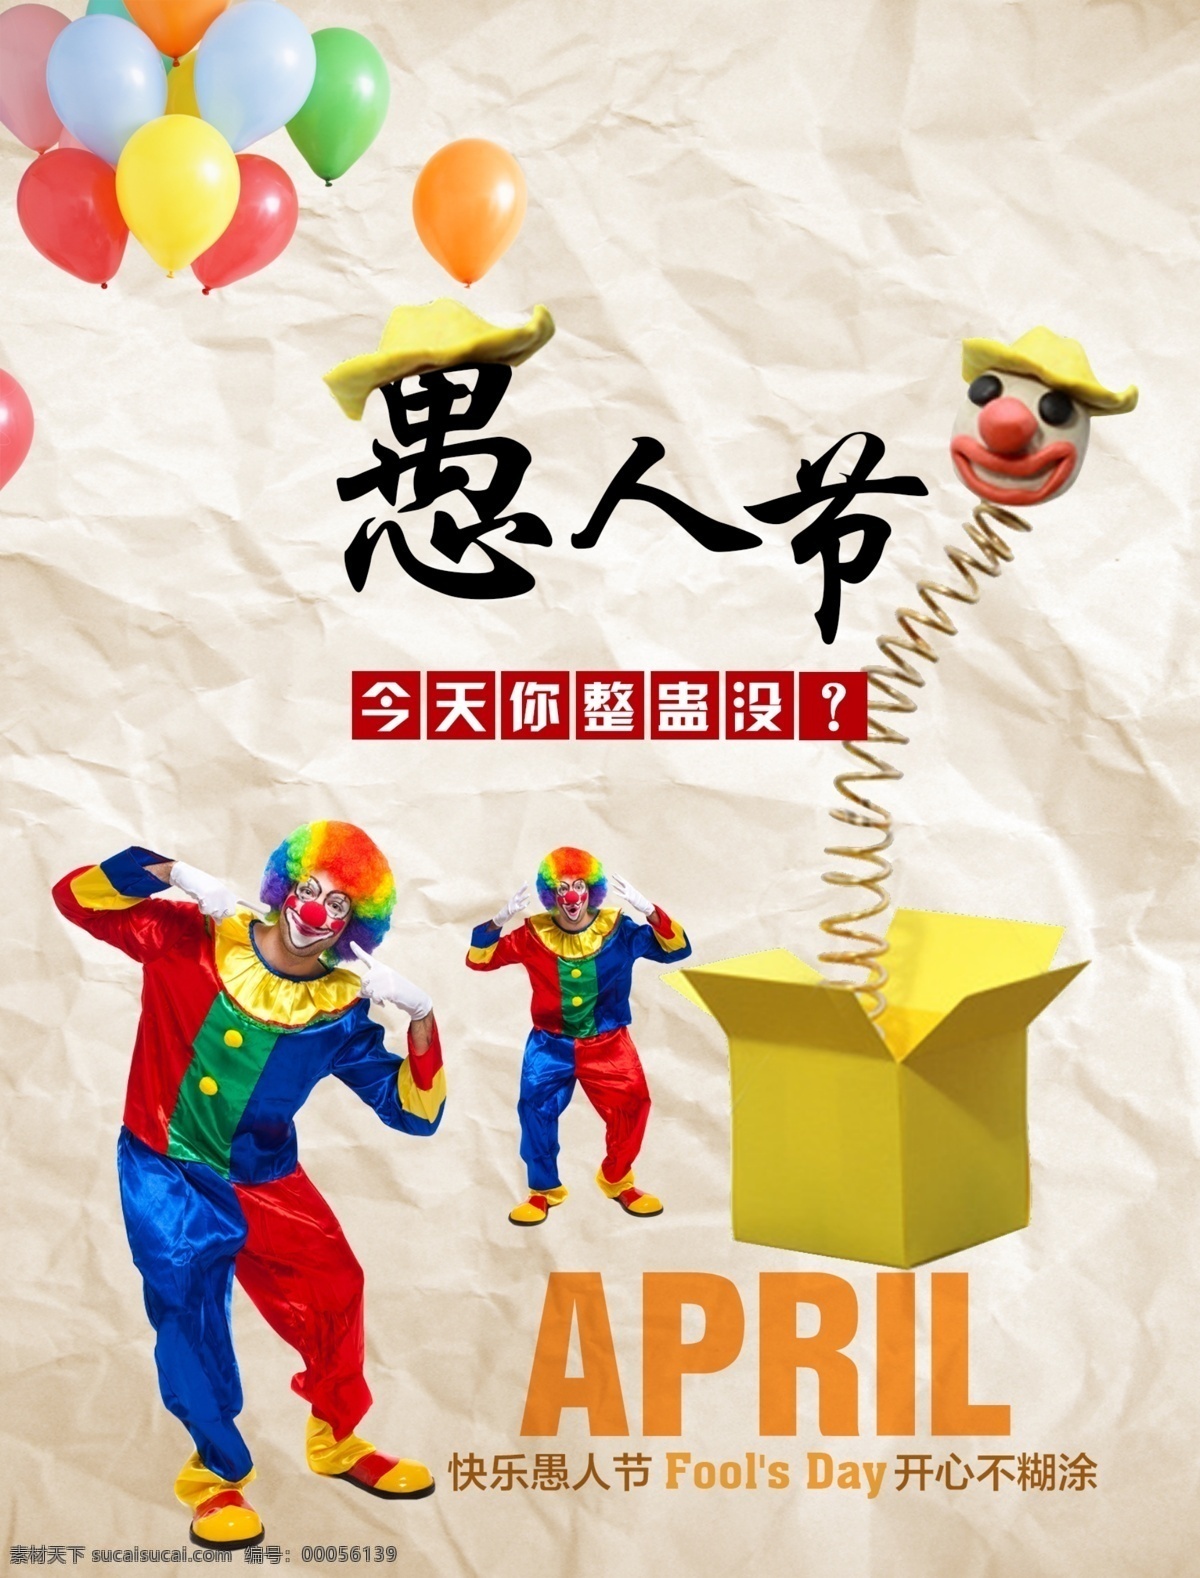 愚人节 小丑 气球 四月 纸 节日素材 其他节日